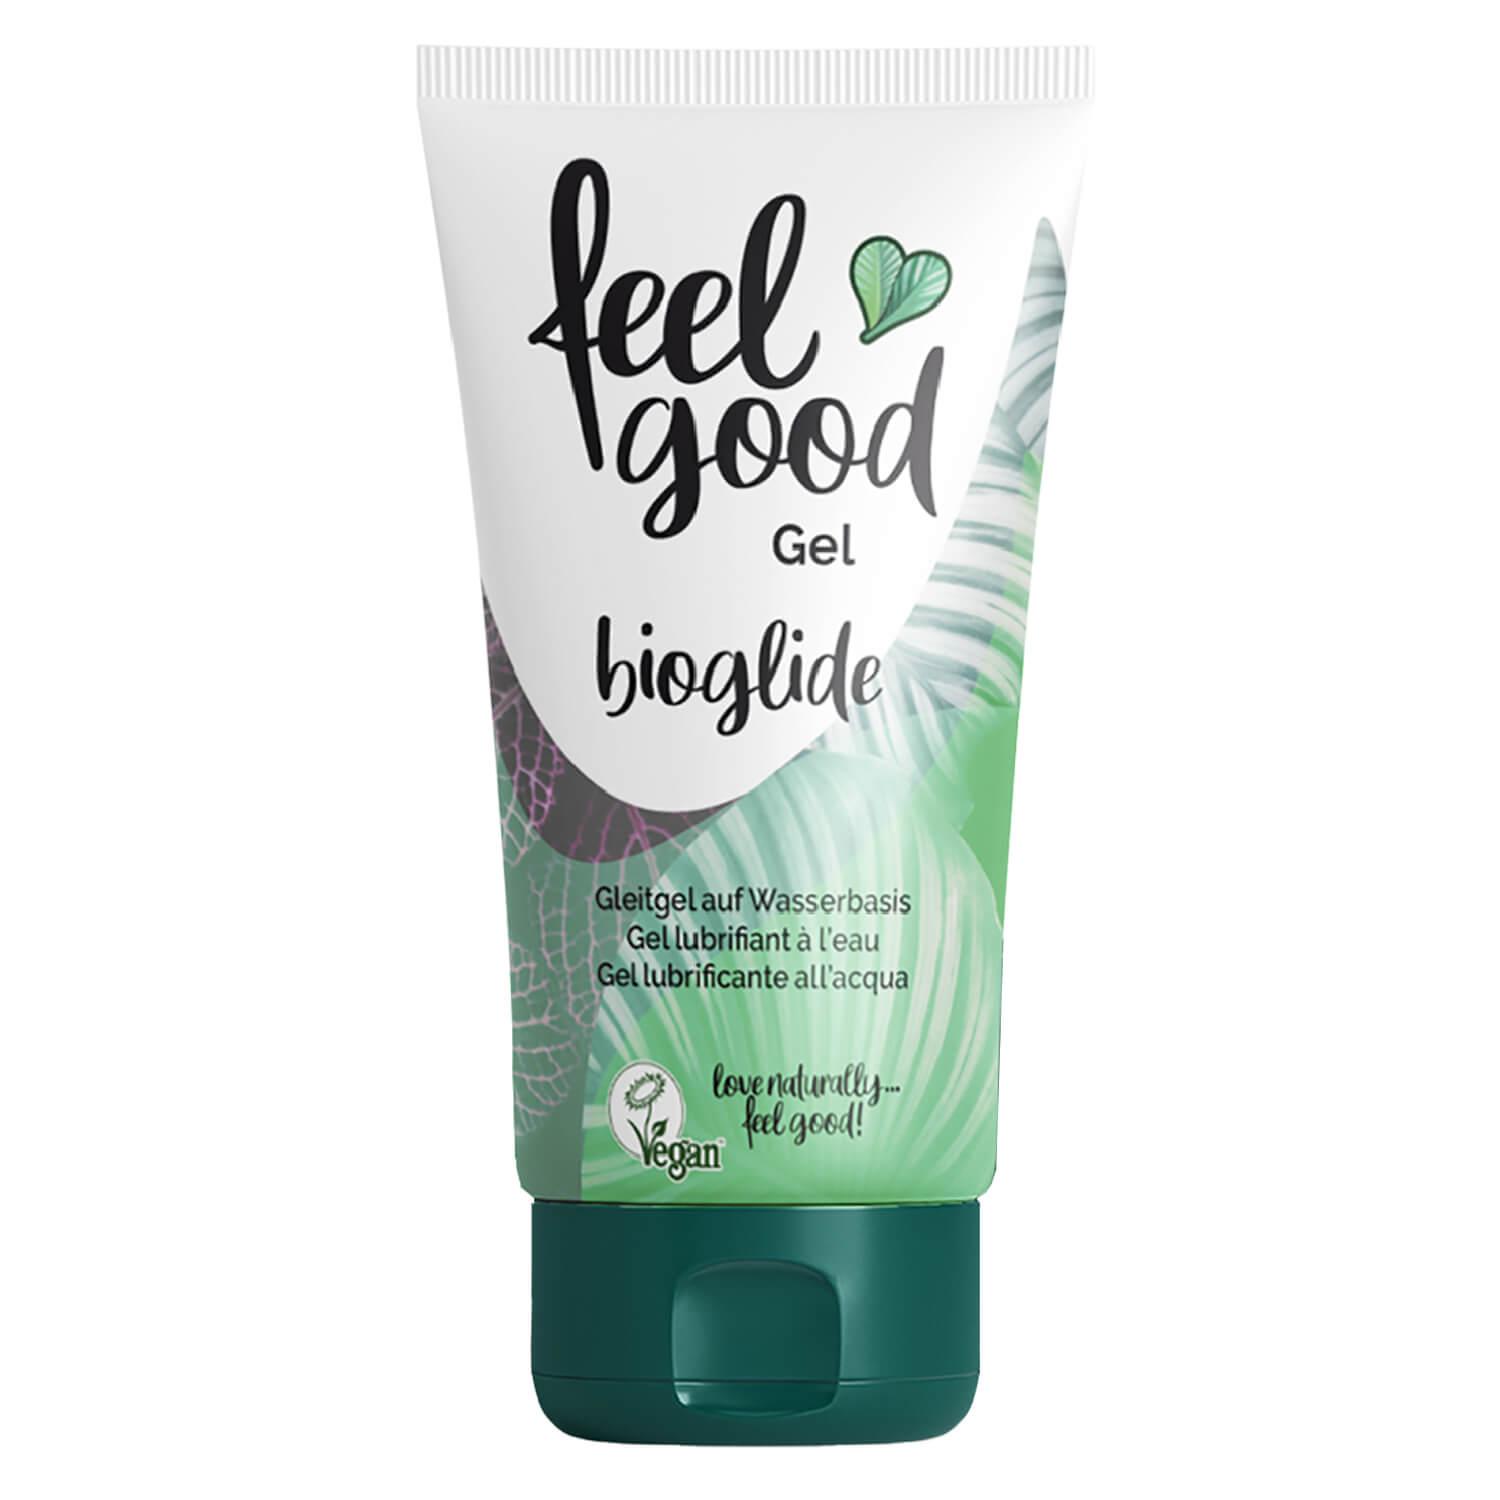 feelgood condoms - Gleitgel bioglide